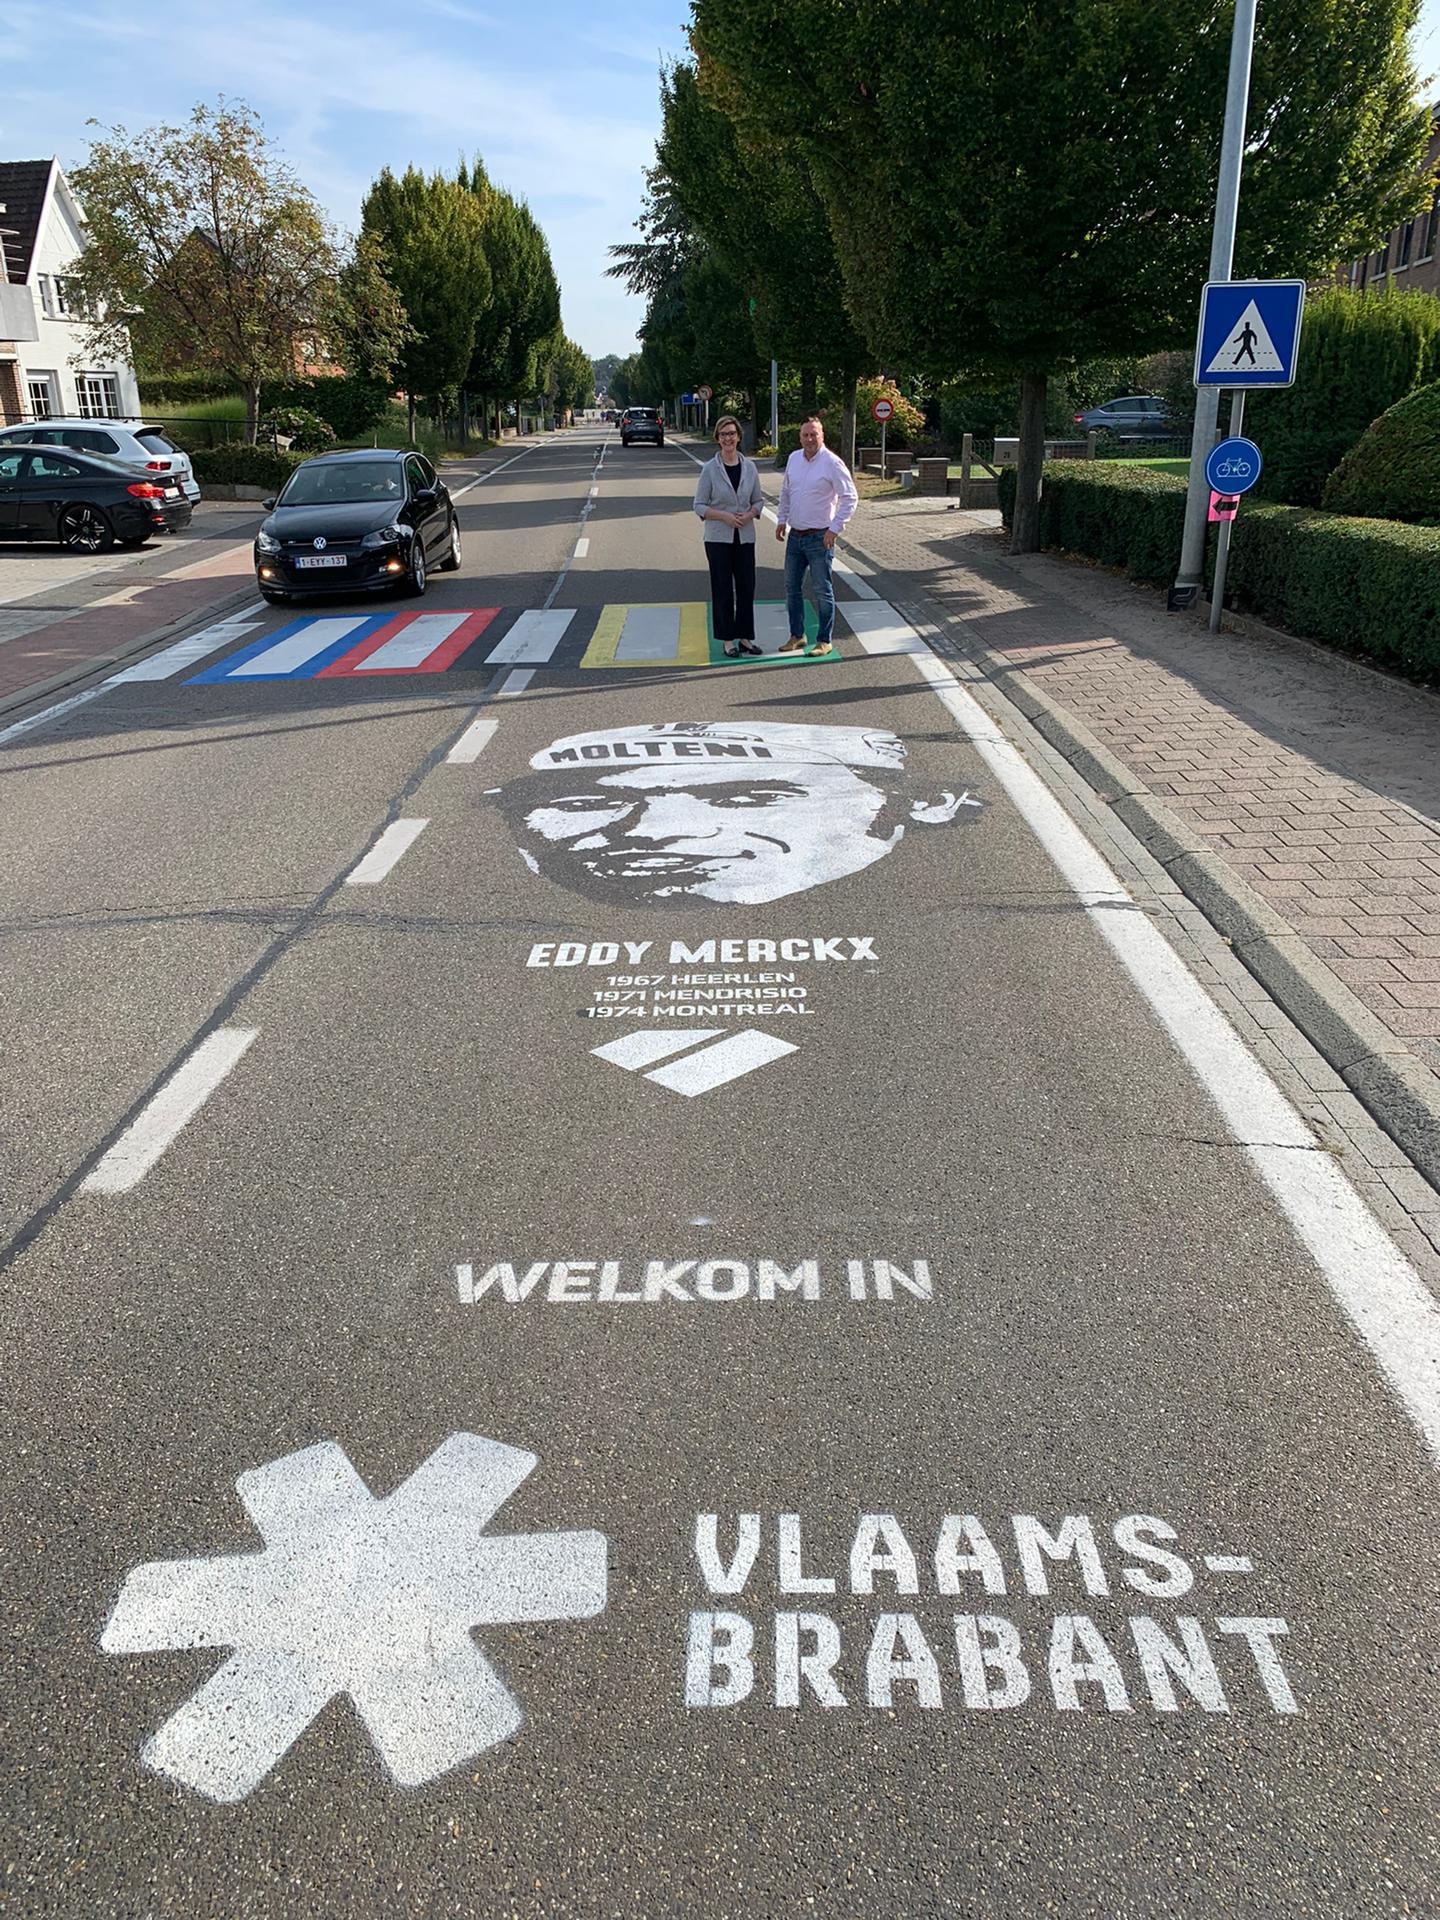 PUNCHEUR maakte een street art over Eddy Merckx in Keerbergen, op de plaats waar het peloton van het WK Wielrijden de provincie Vlaams-Brabant zal binnenrijden